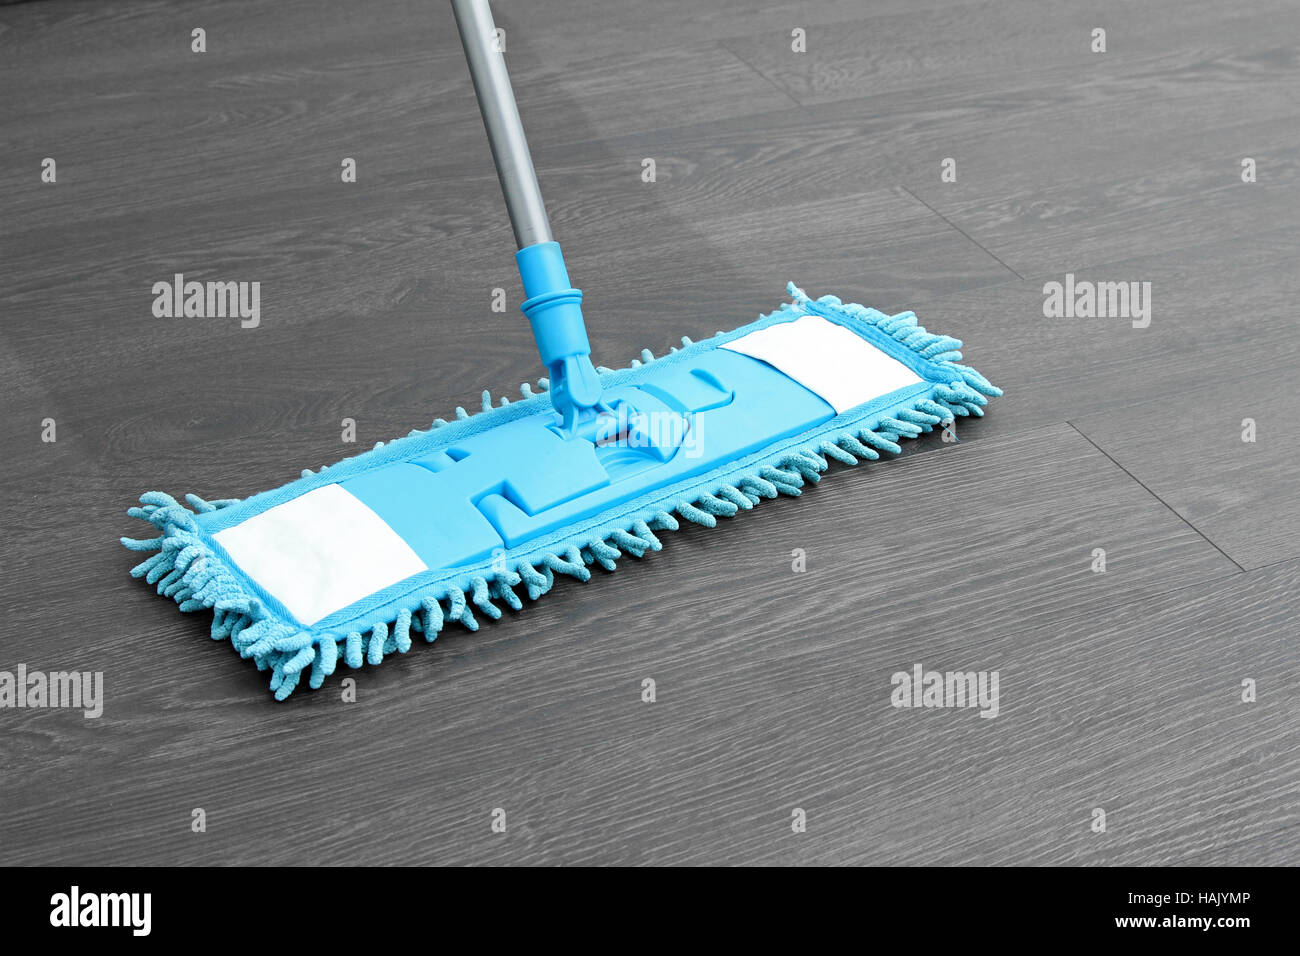 Per la pulizia della casa - mop lavaggio pavimento in legno Foto Stock